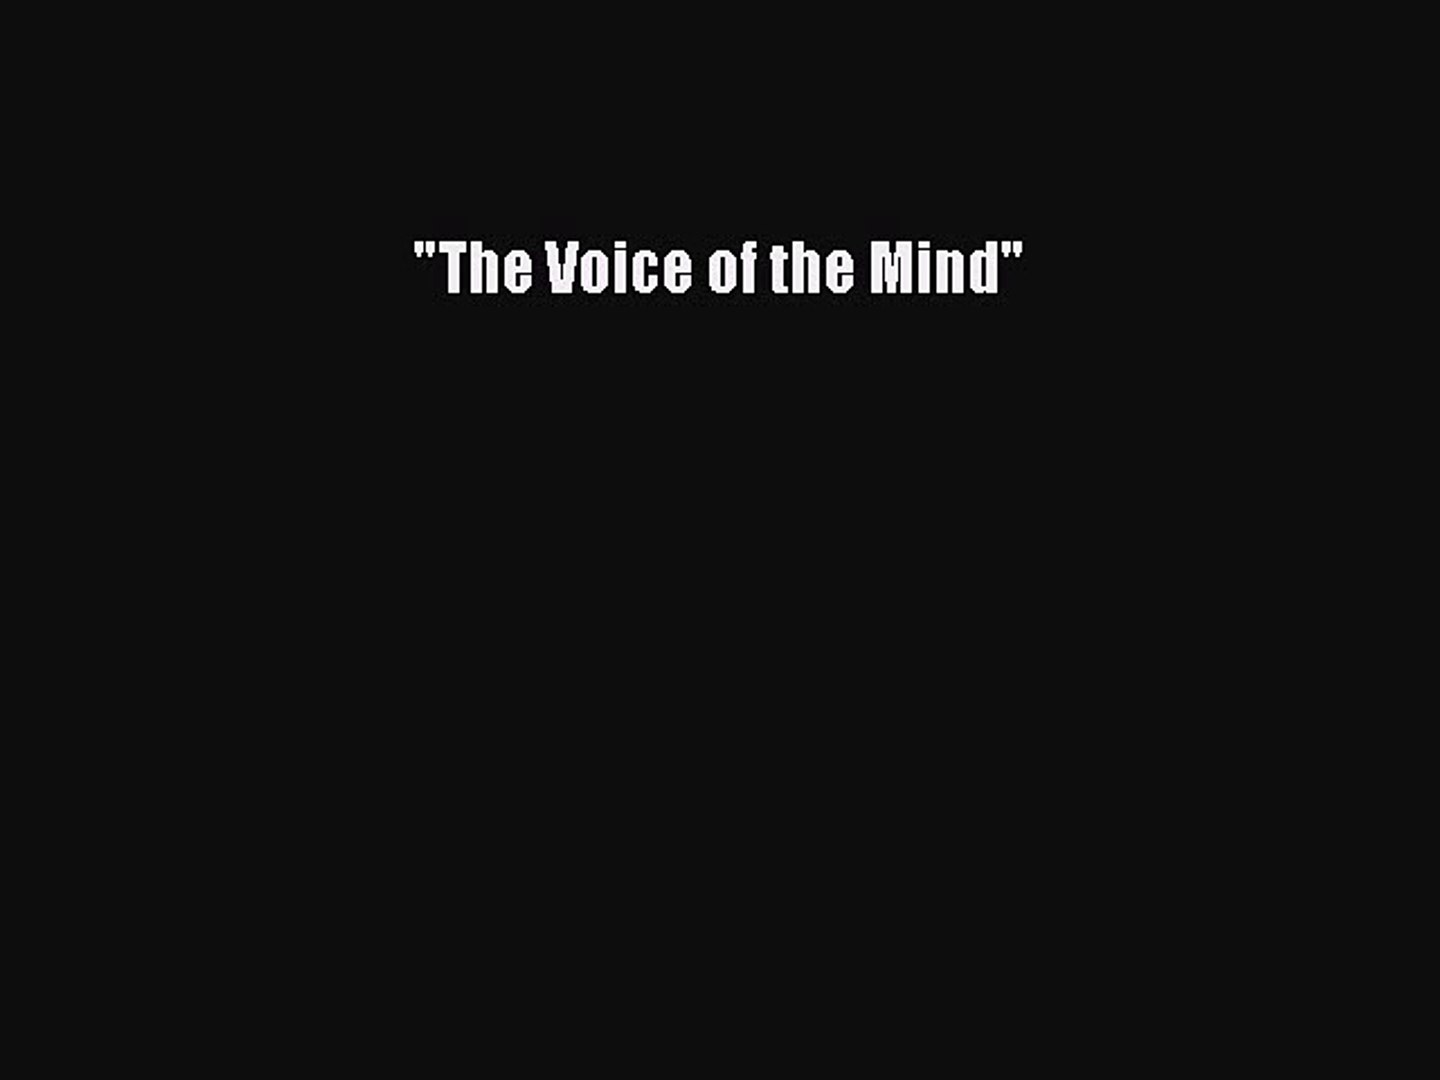 the voice of the mind ザヴォイスオブザマインド